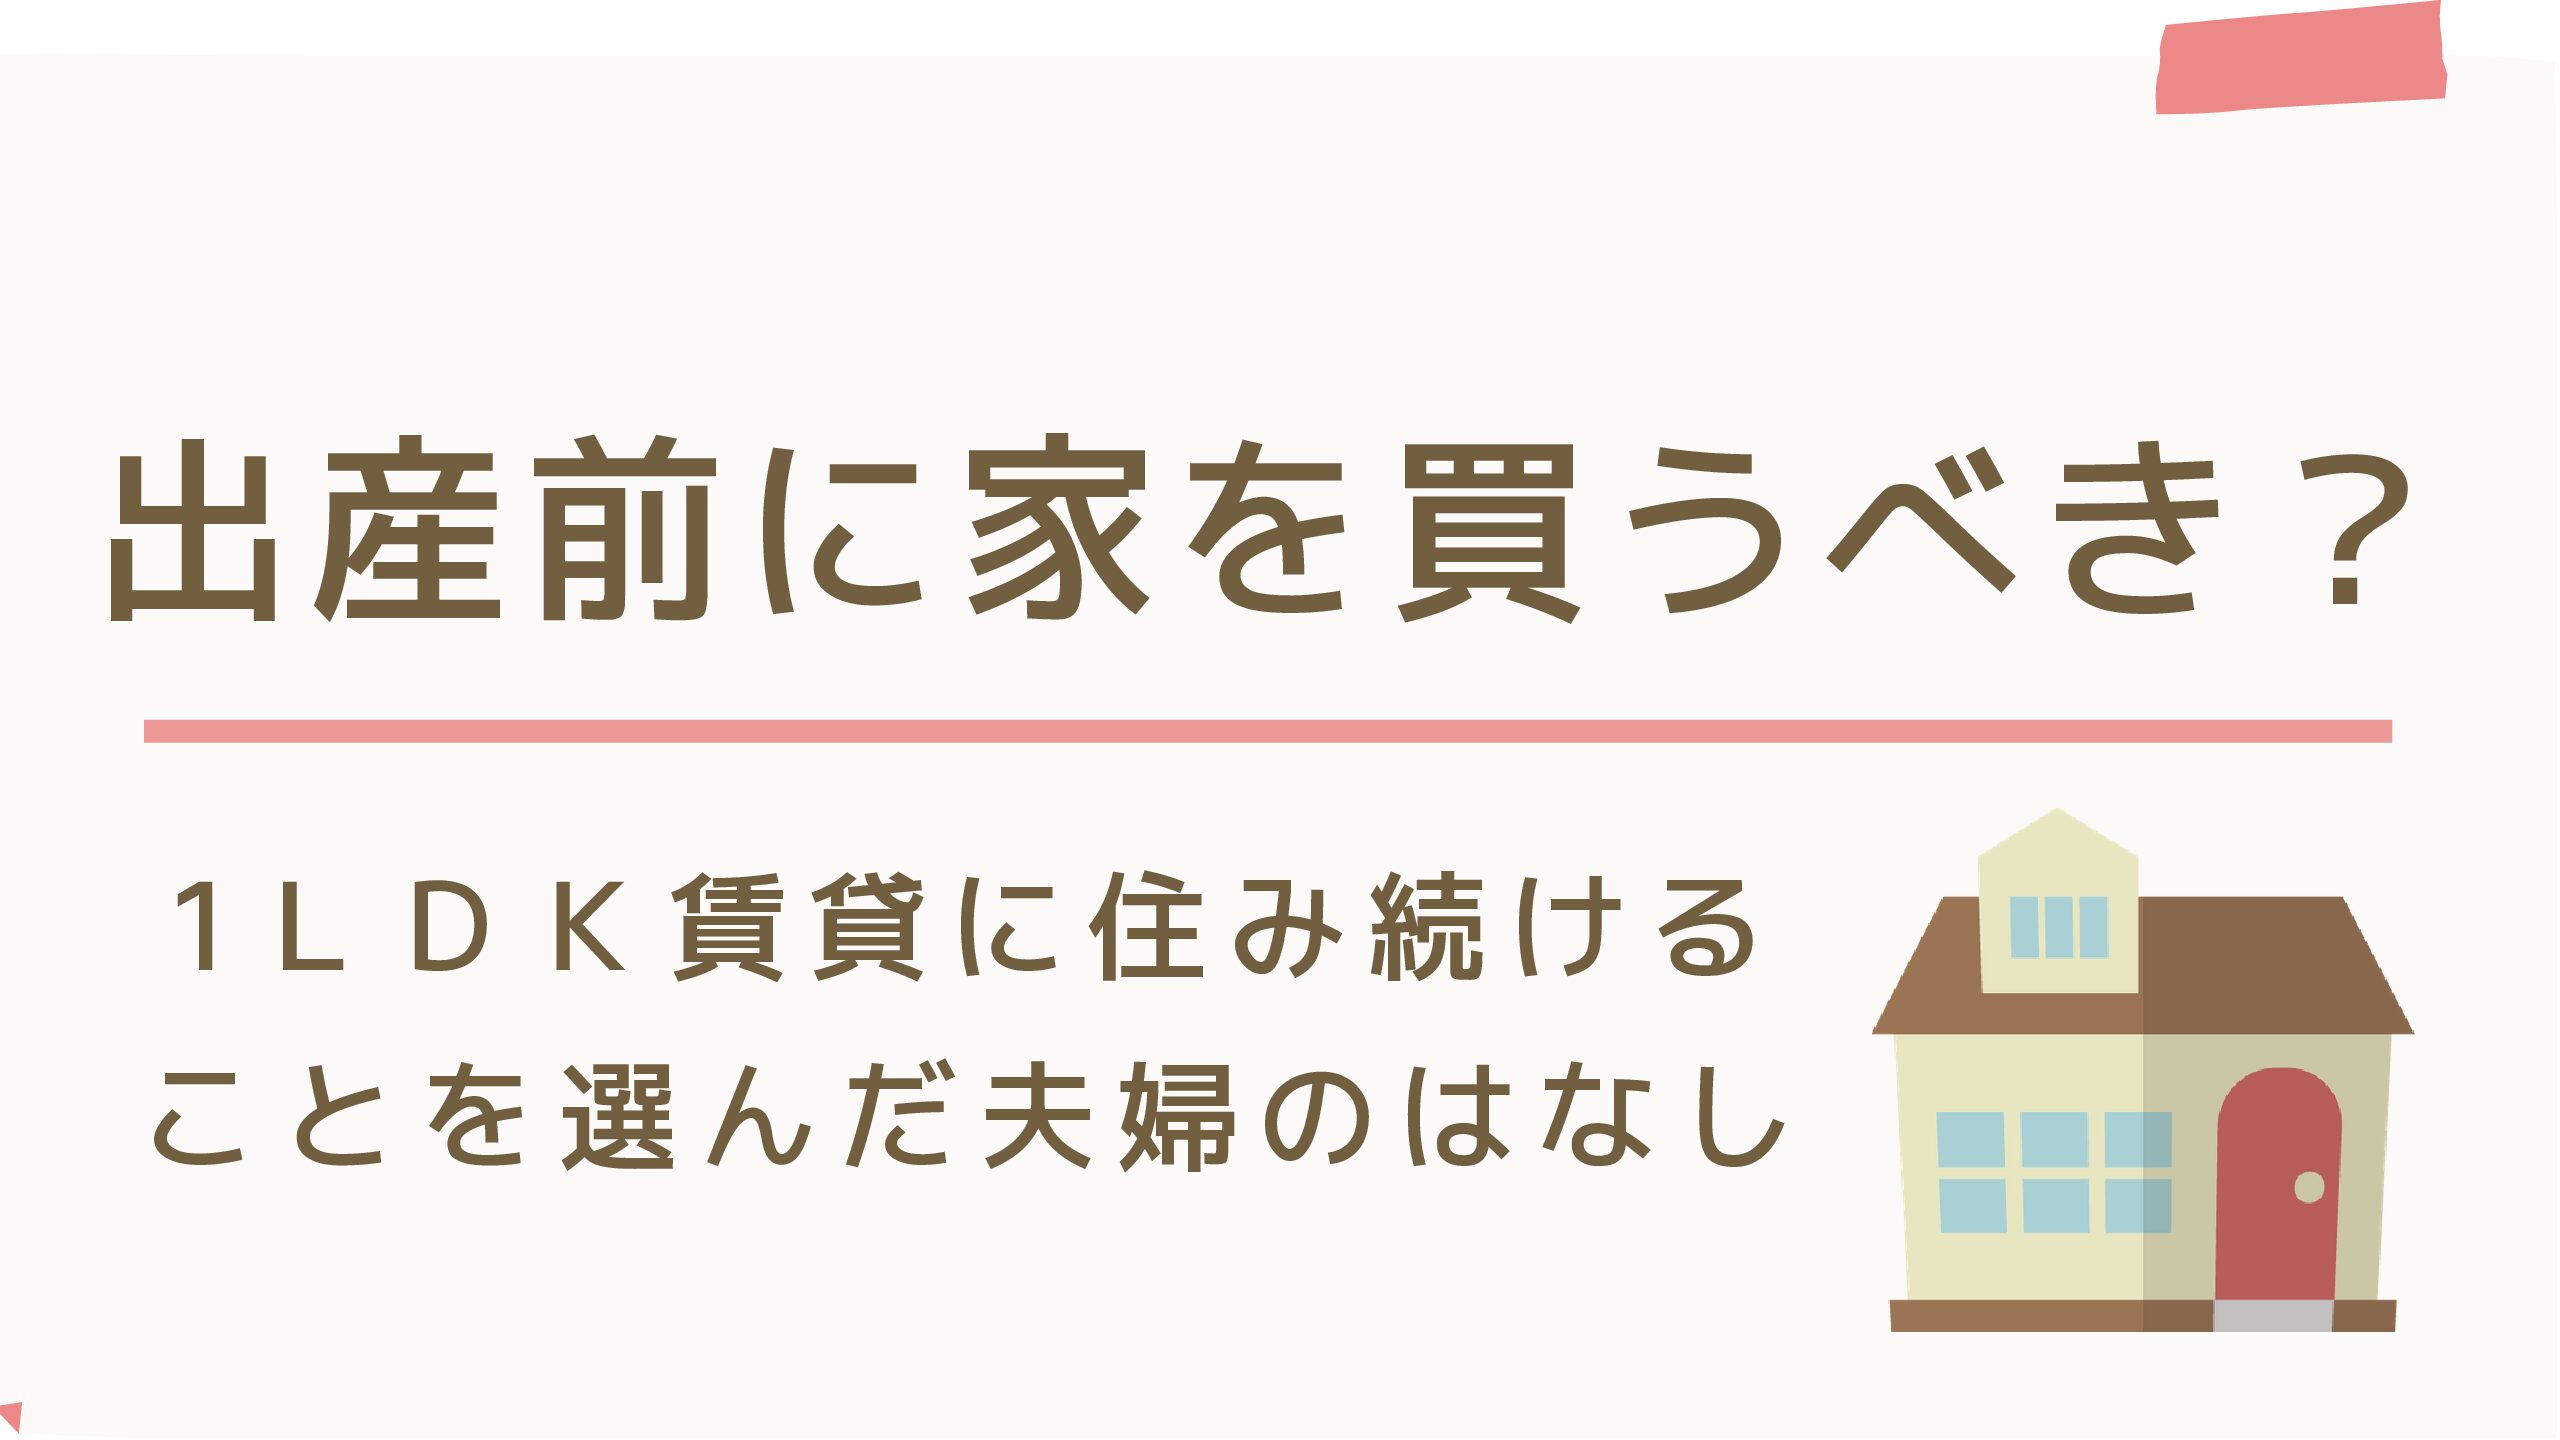 出産前に家を買うべき 1ldk賃貸に住み続けることを選んだ夫婦のはなし 阿波むすめの子育てブログ In Tokyo